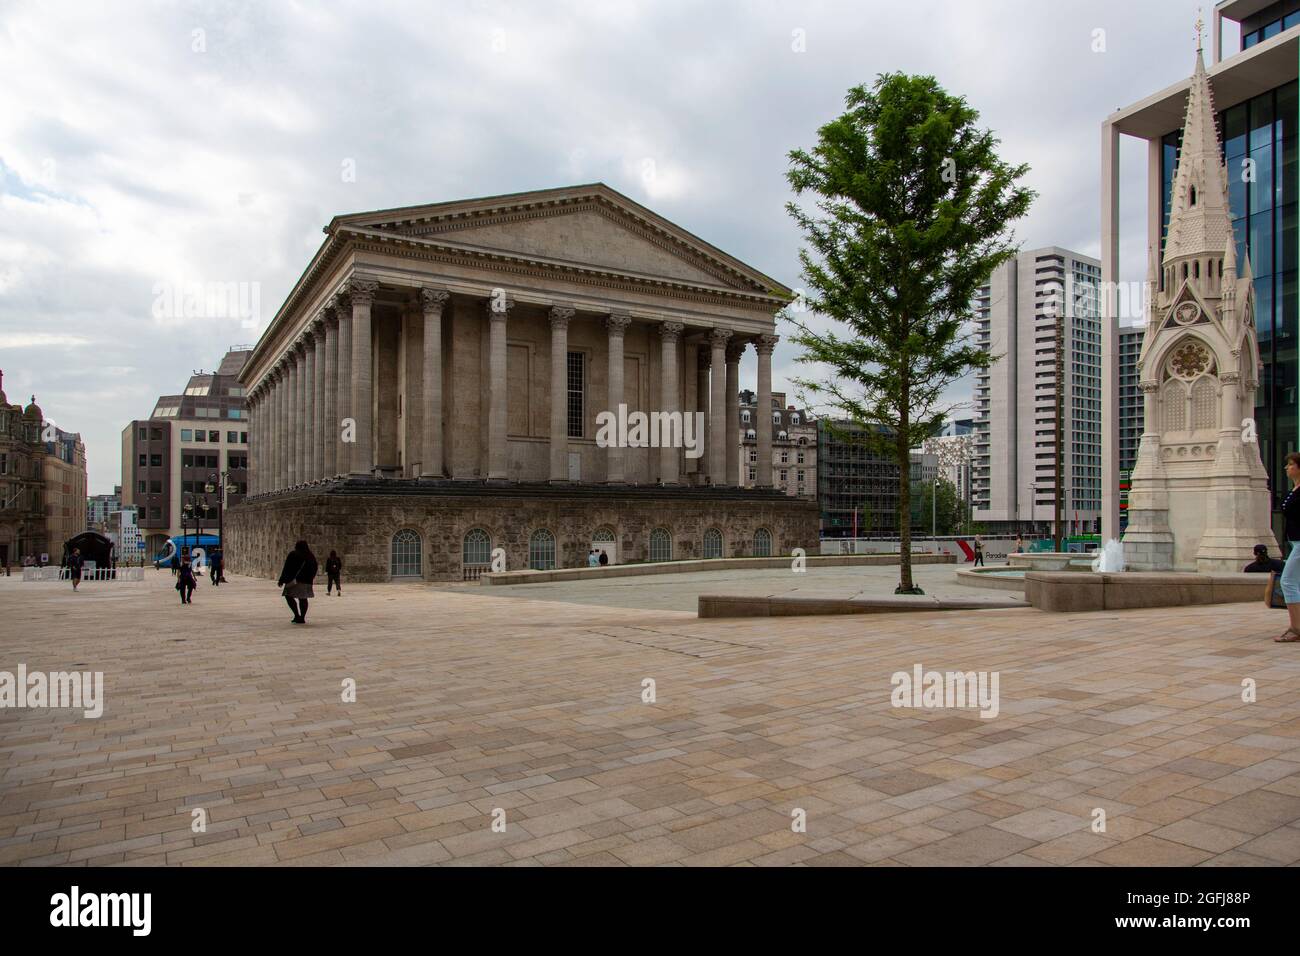 El ayuntamiento clásico, Chamberlain Square, Birmingham, West Midlands, Reino Unido Foto de stock